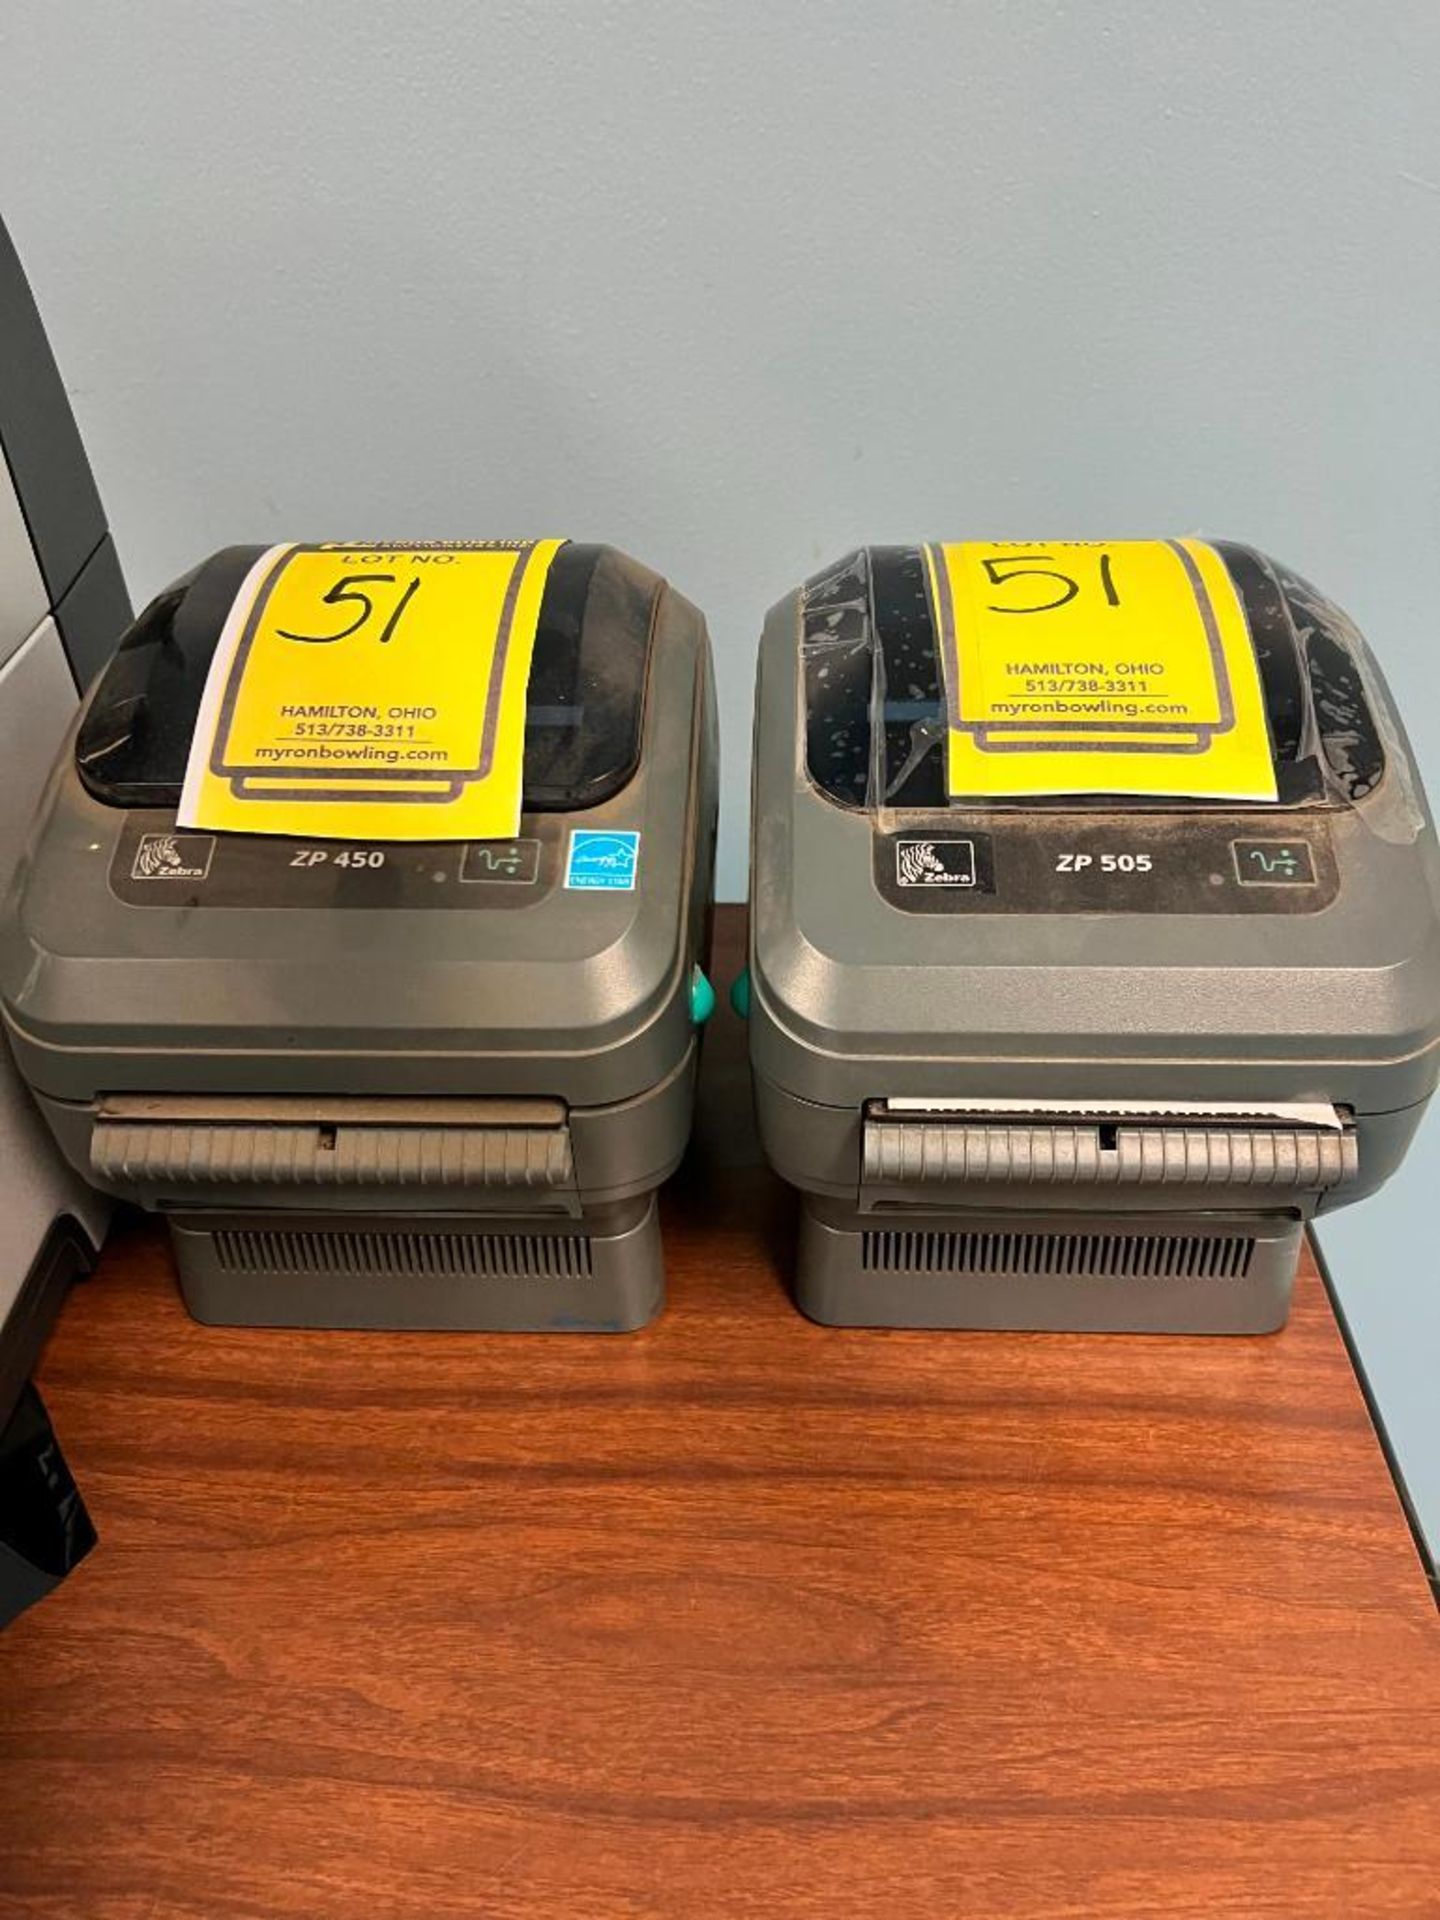 (2) Zebra Printers, Model Number ZP450